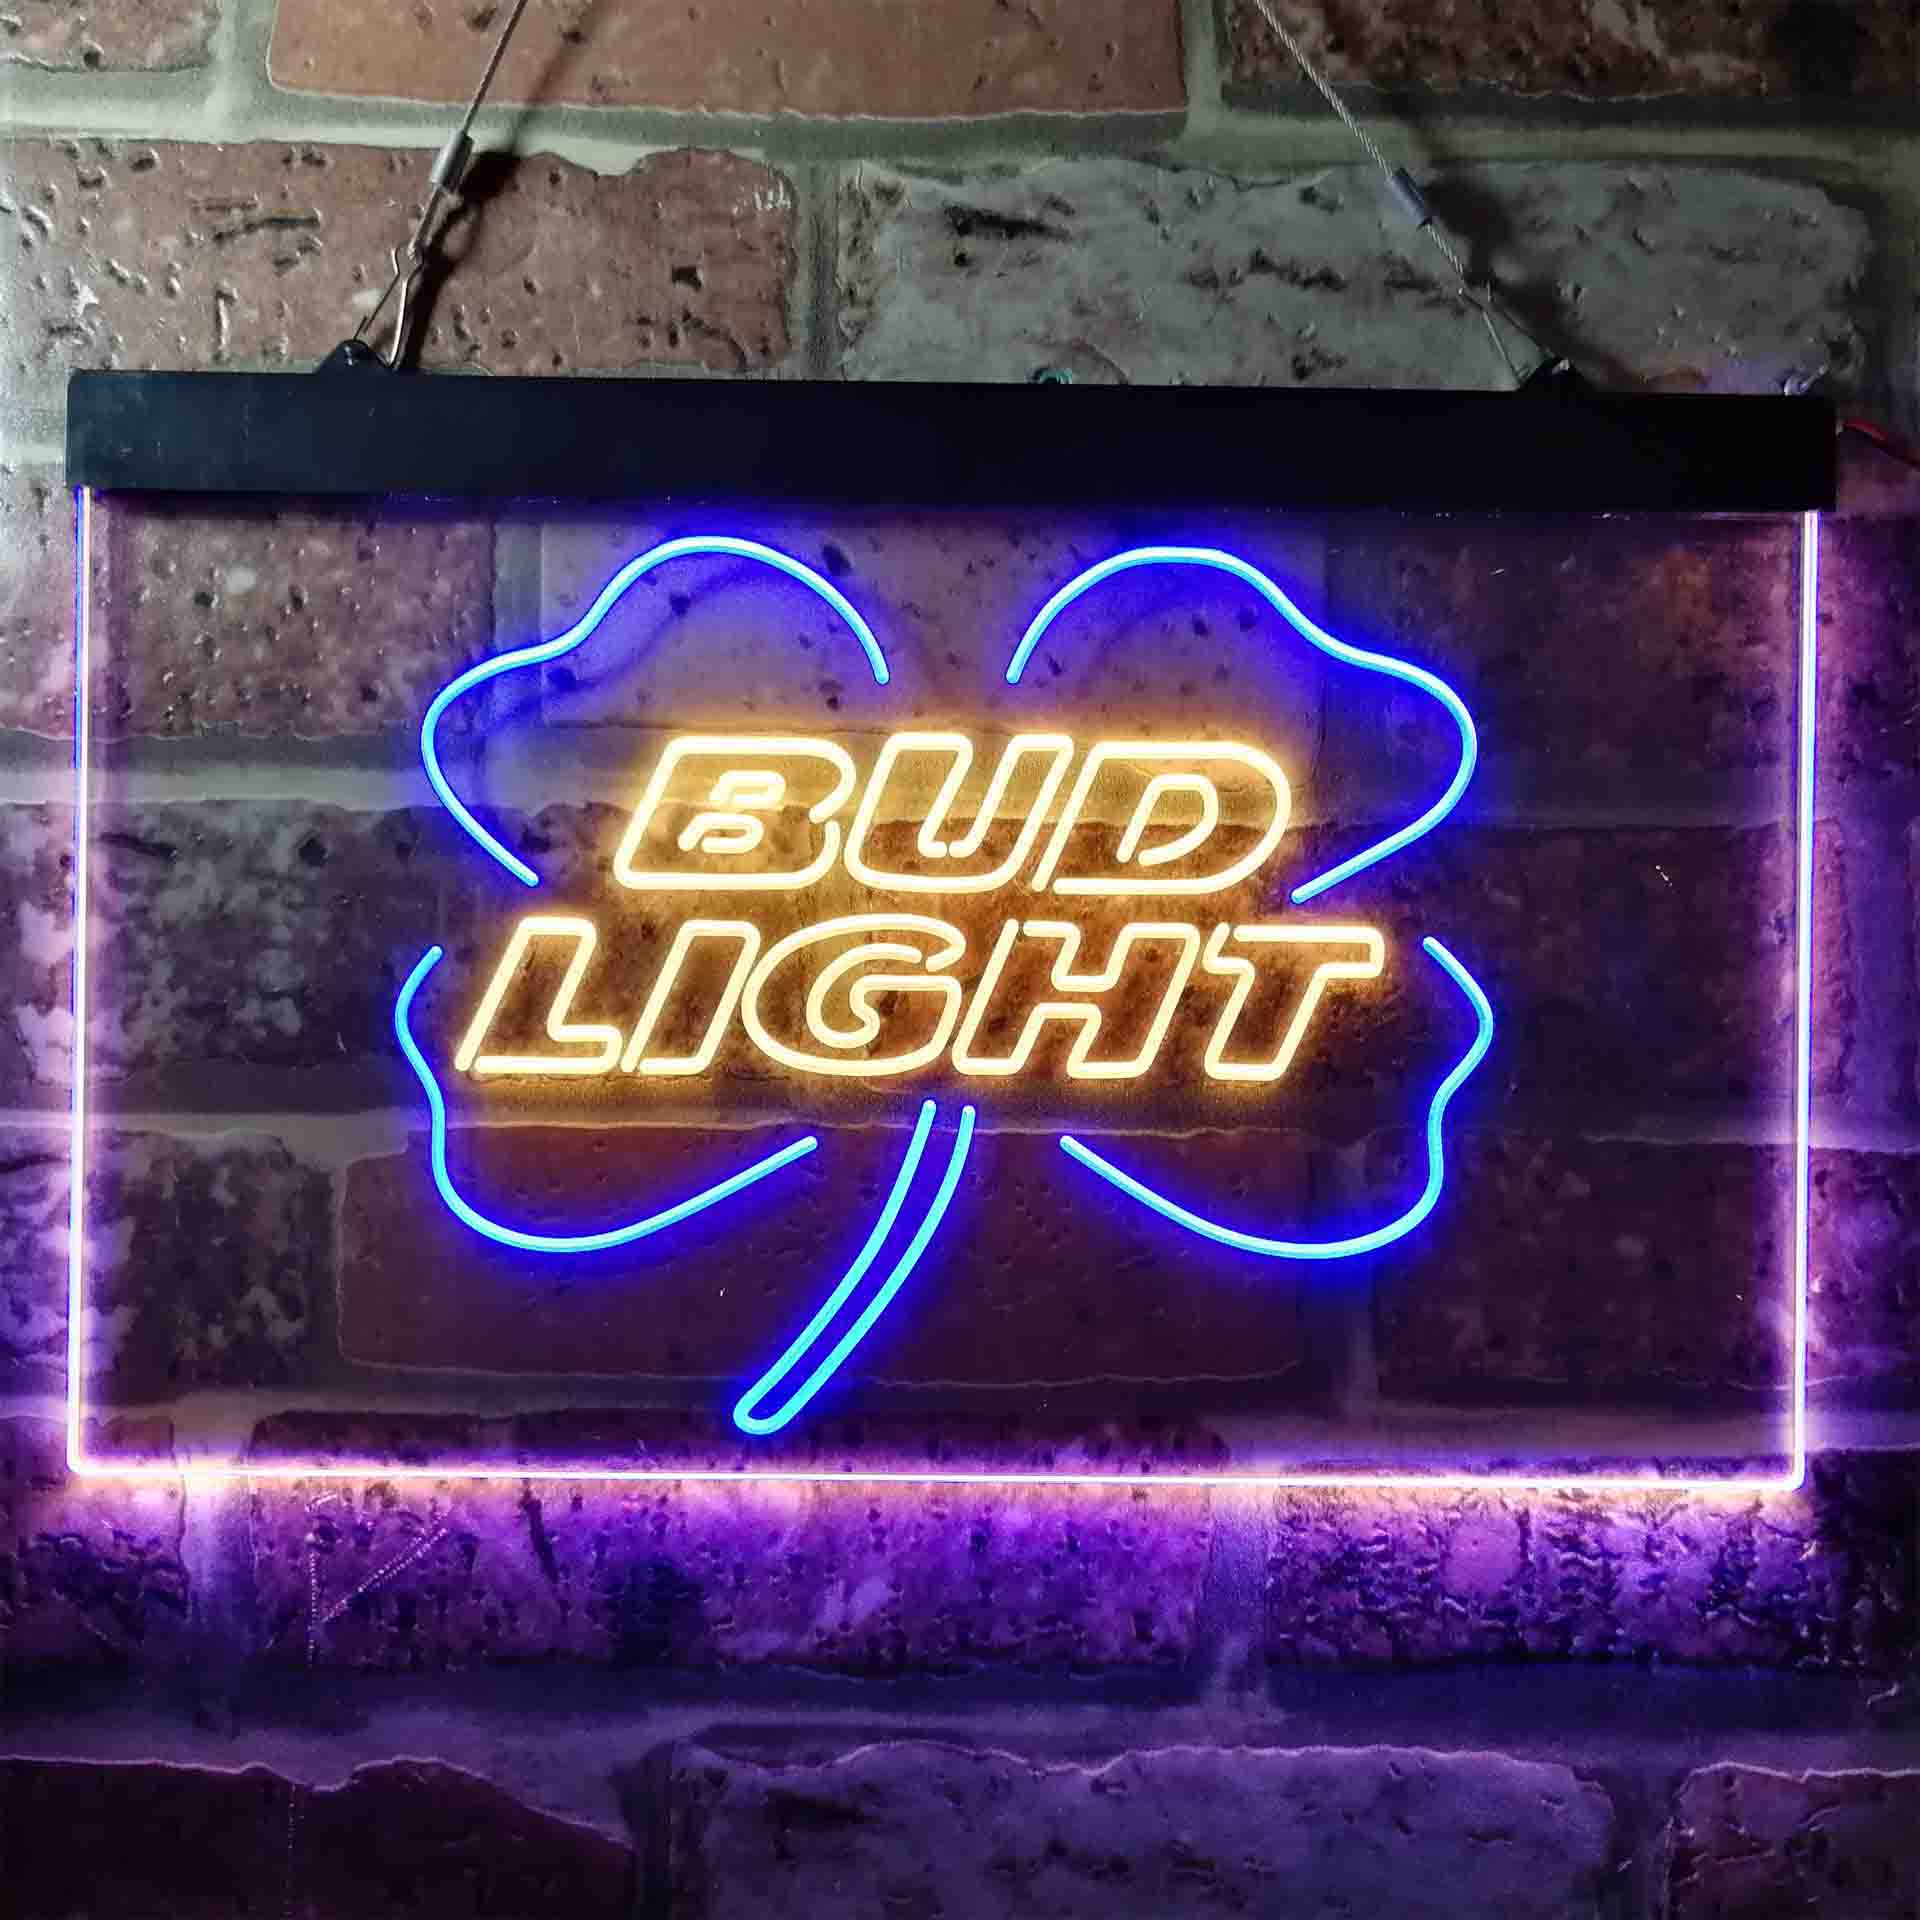 Bud Light Clover Bar Neon LED Sign